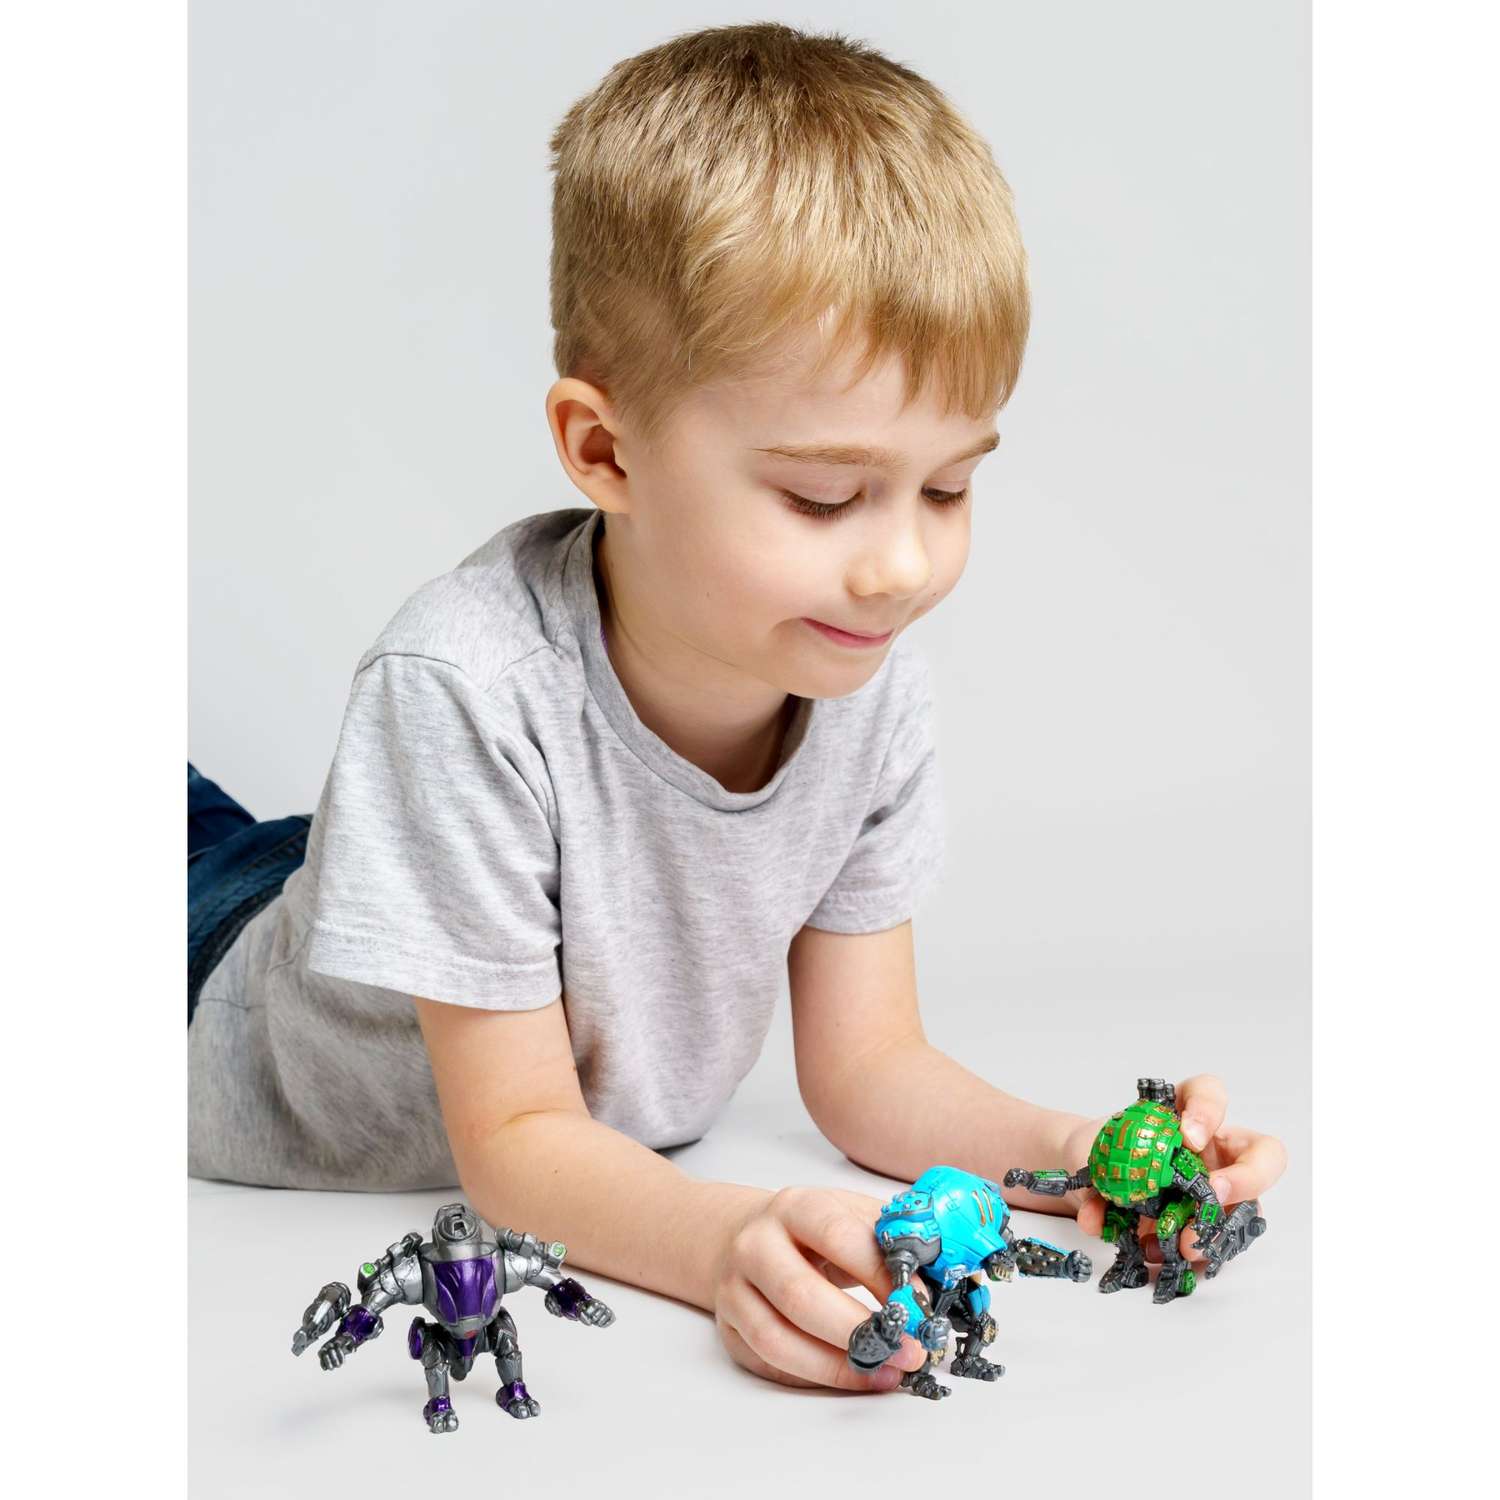 Роботы CyberCode 3 фигурки игрушки для детей развивающие пластиковые коллекционные интересные. 8см - фото 5